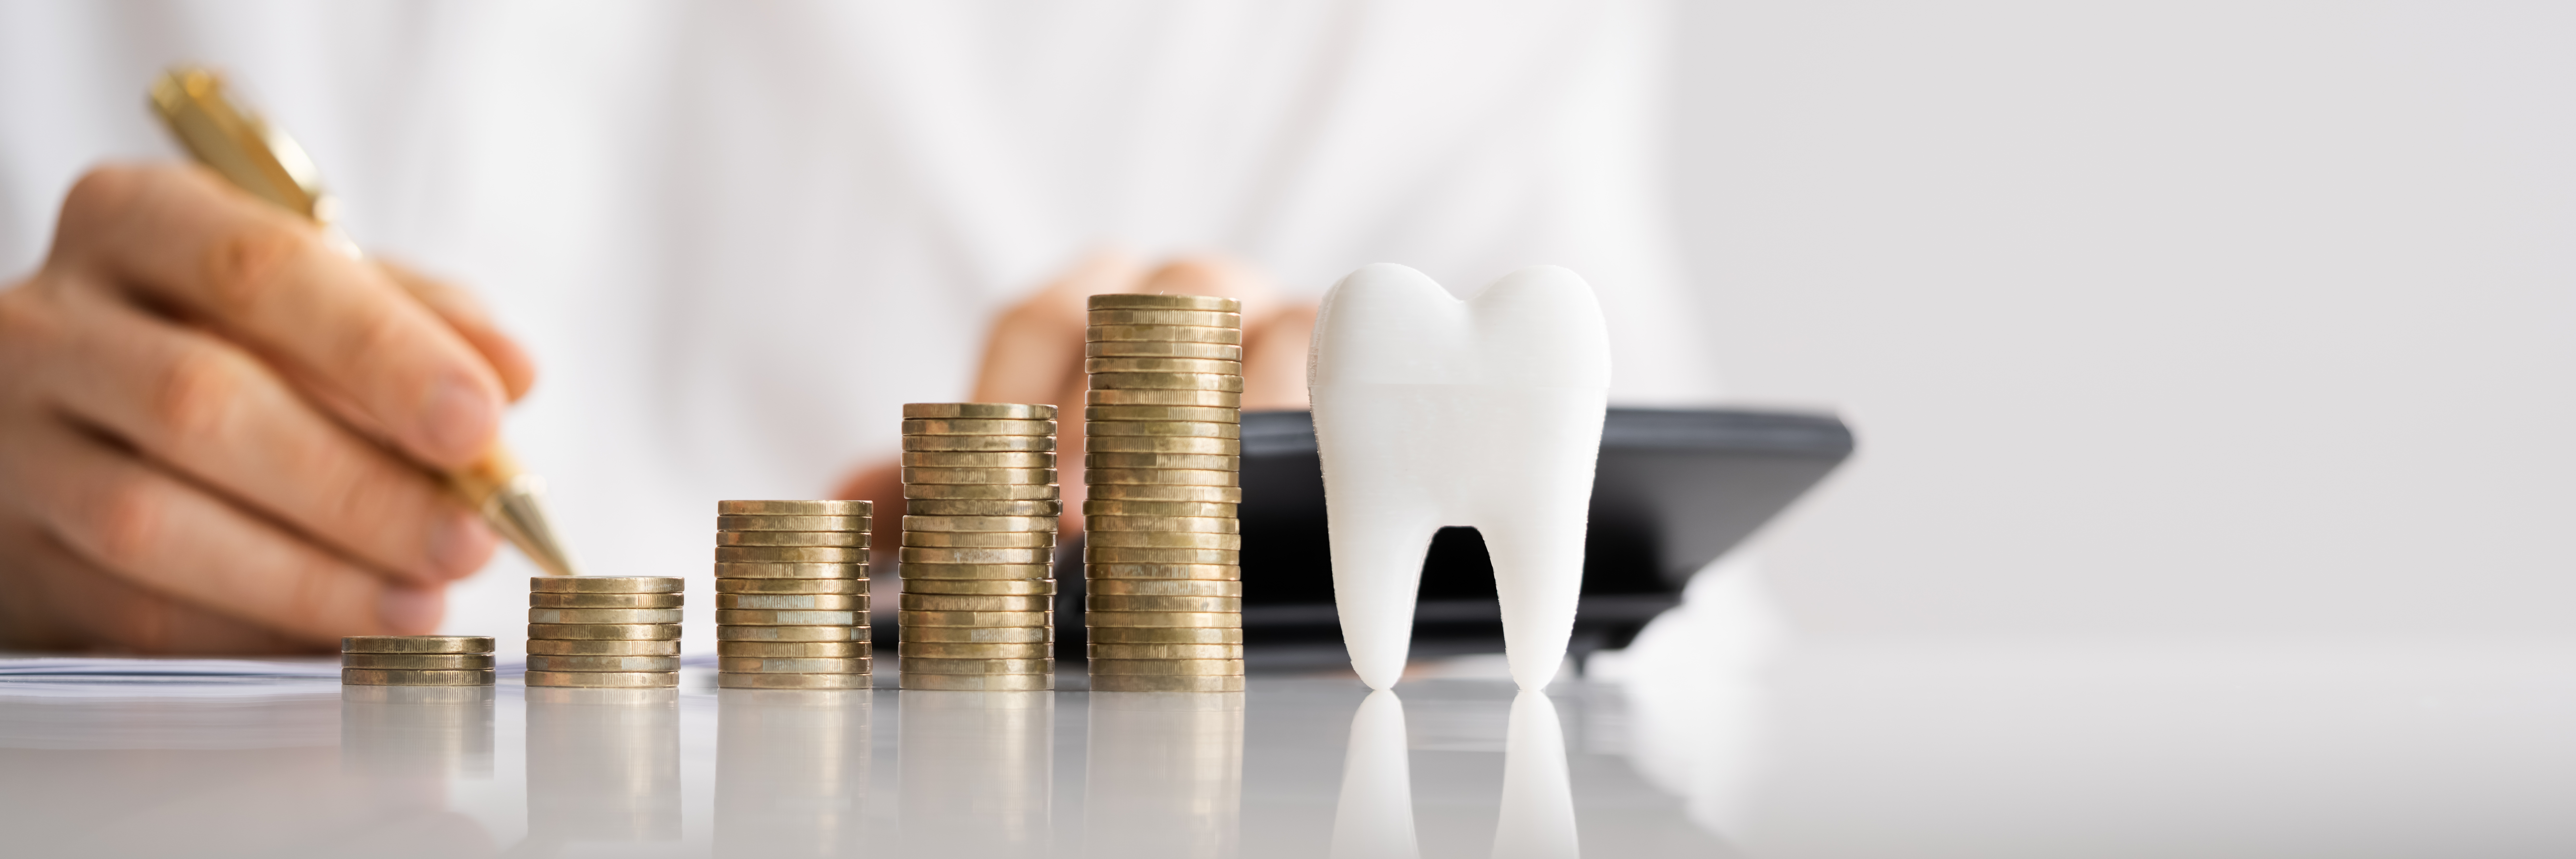 Bis zu 15 % mehr Umsatz pro Jahr in der Zahnarztpraxis